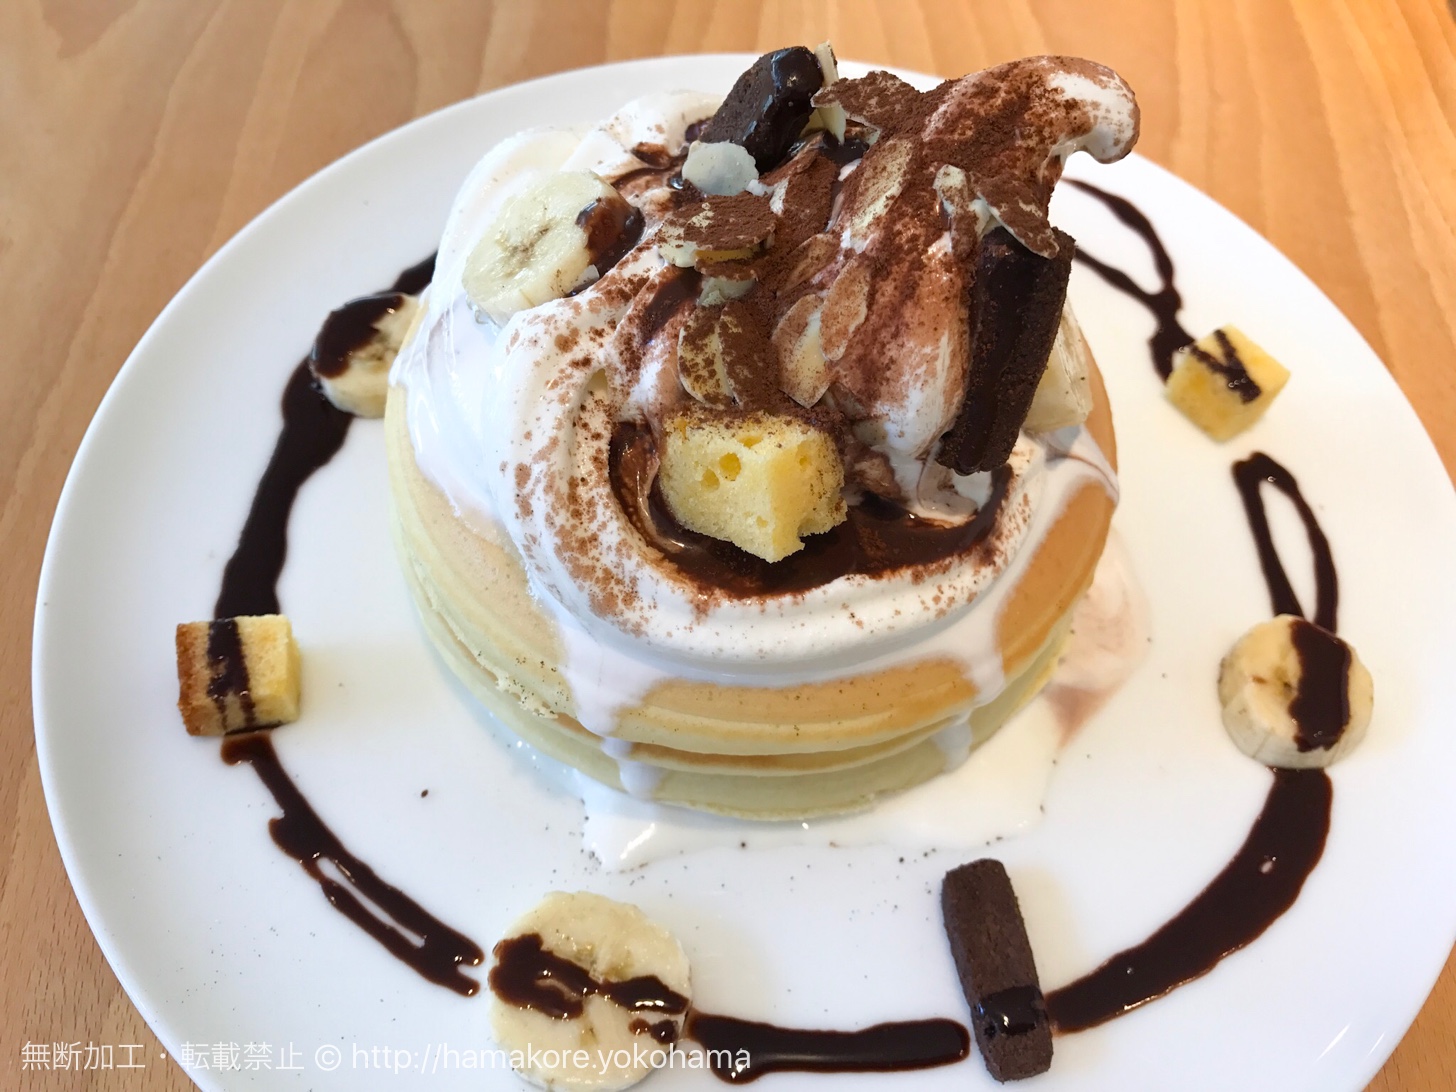 横浜中華街 パンケーキ リストランテ でモチっと食感が美味しい3段のデビルパンケーキを食べて来た はまこれ横浜